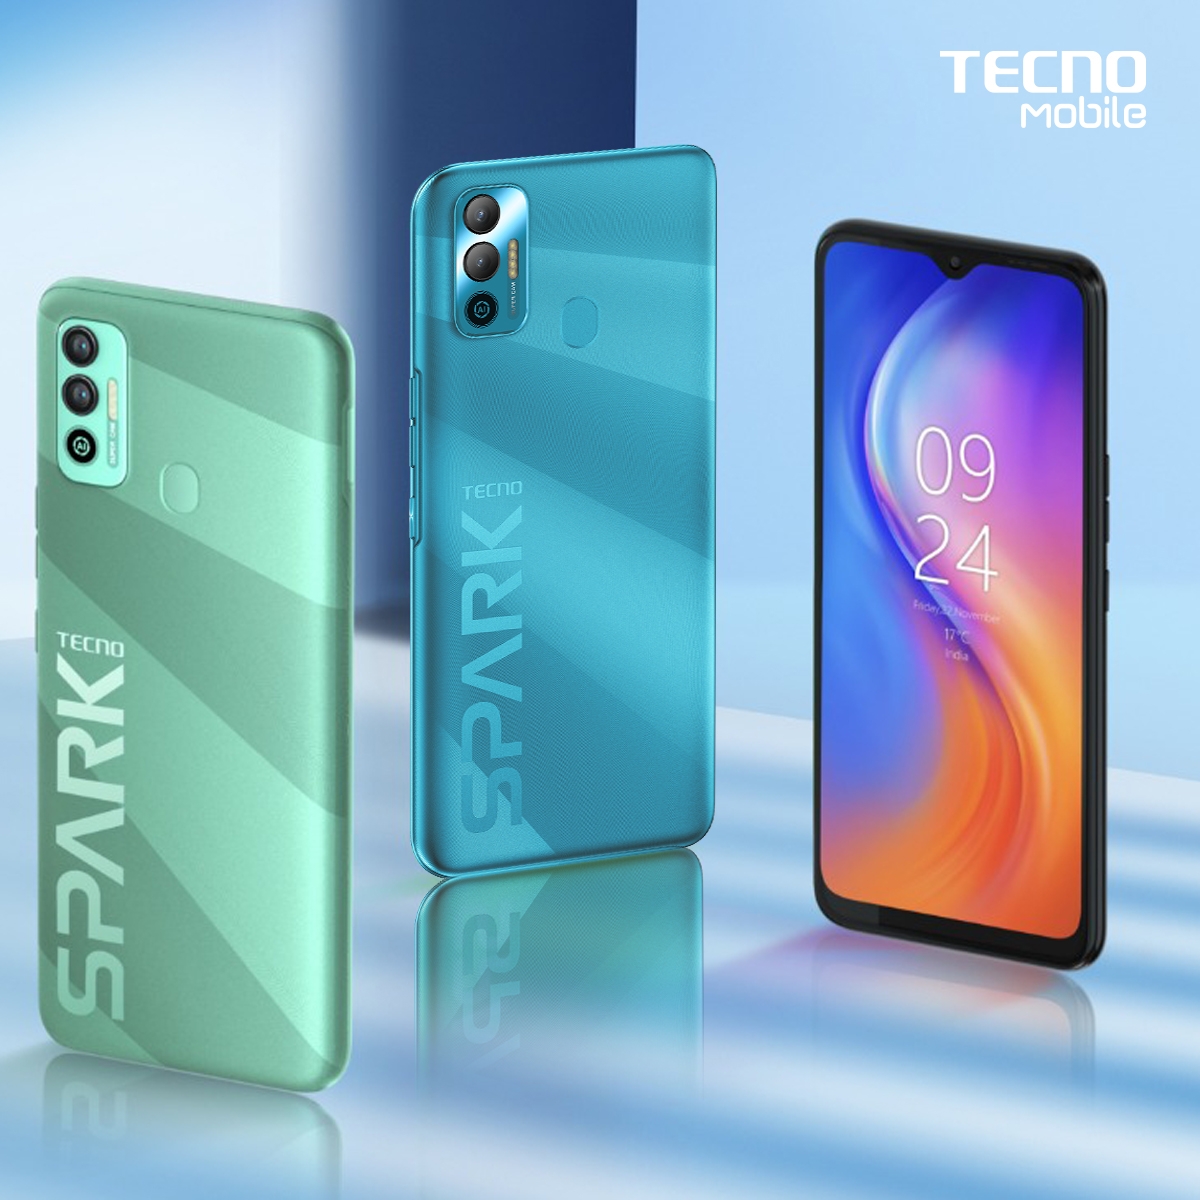 TECNO Mobile Luncurkan Spark 7 NFC, Smartphone dengan Teknologi NFC dibawah 1,5 Juta